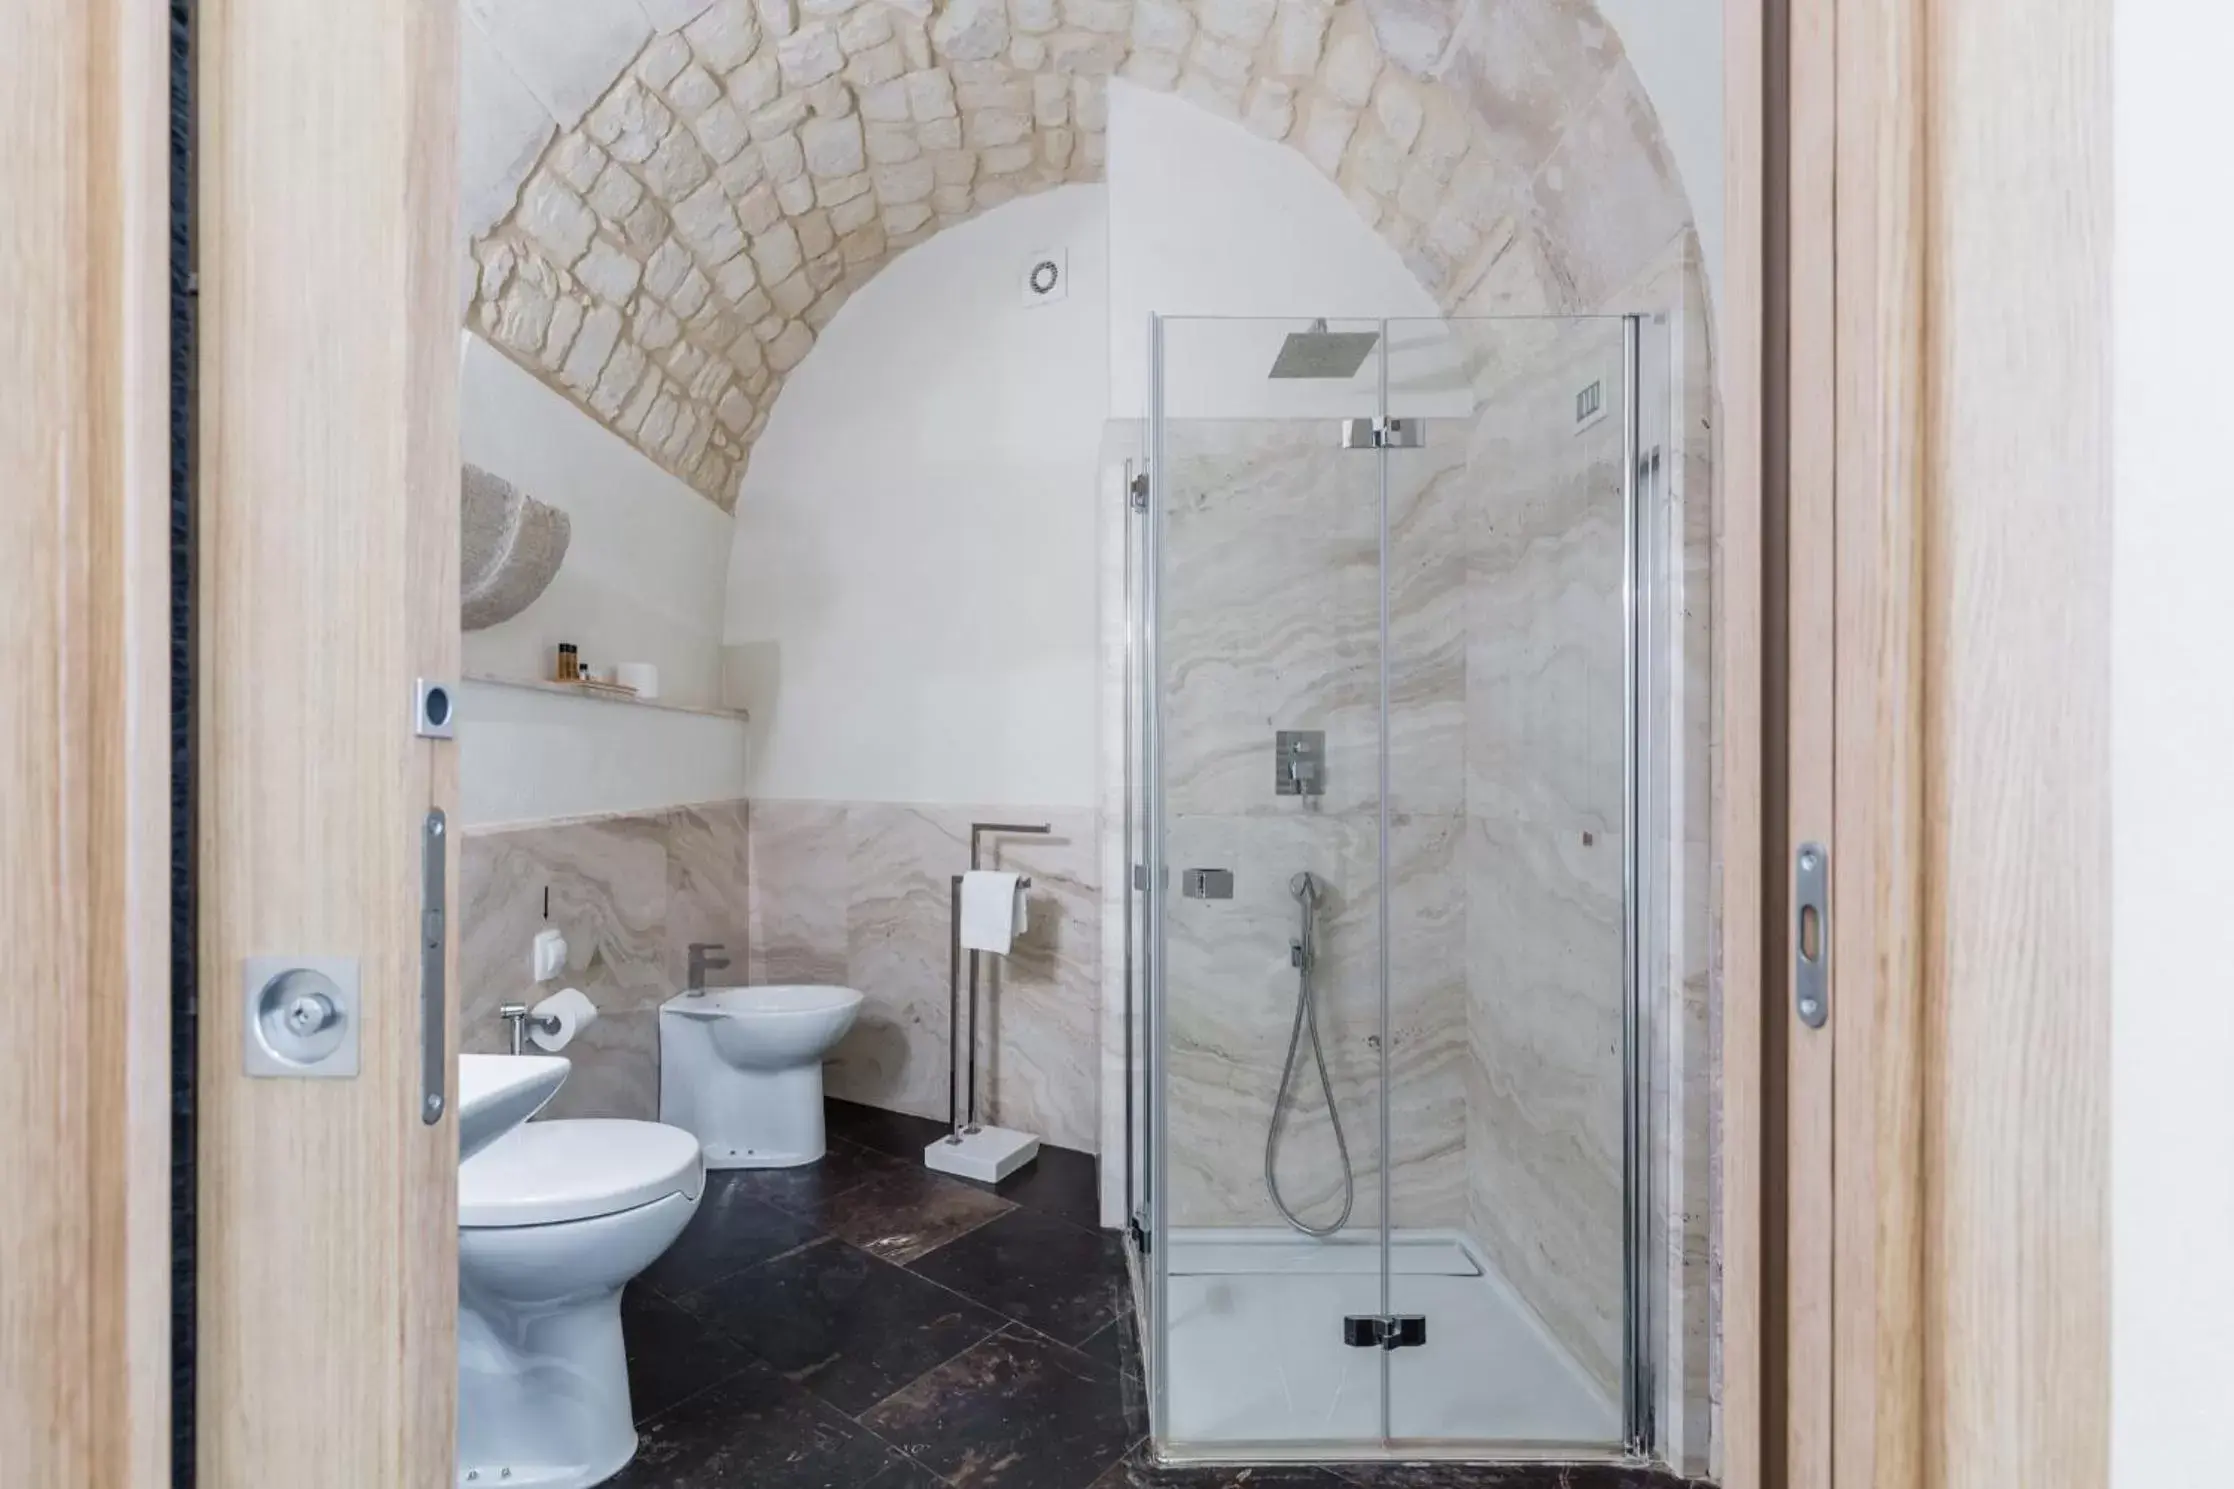 Bathroom in Scicli Albergo Diffuso